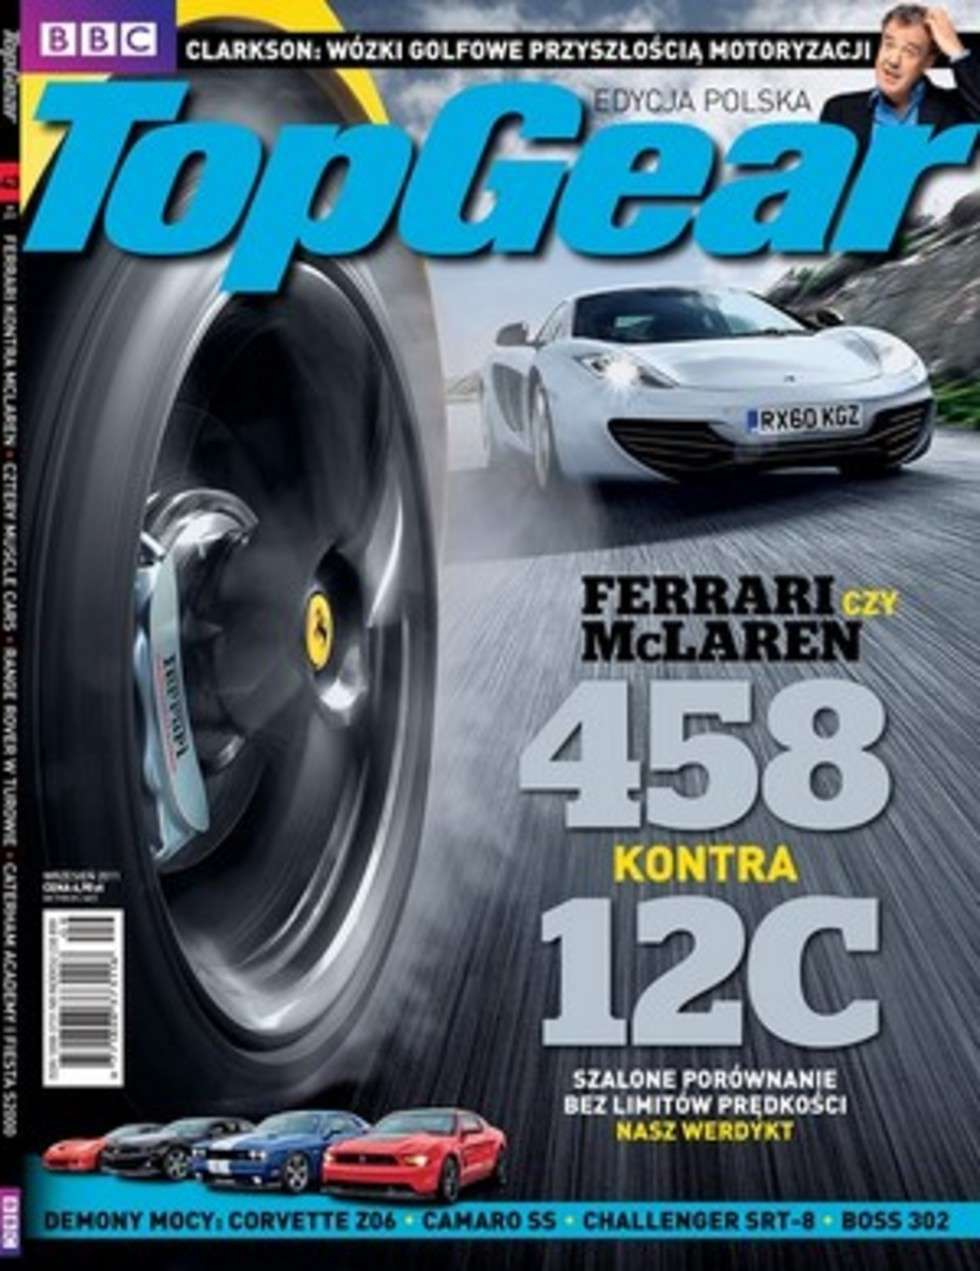  Czasopisma motoryzacyjne II miejsce: "Top Gear" nr 09/2011